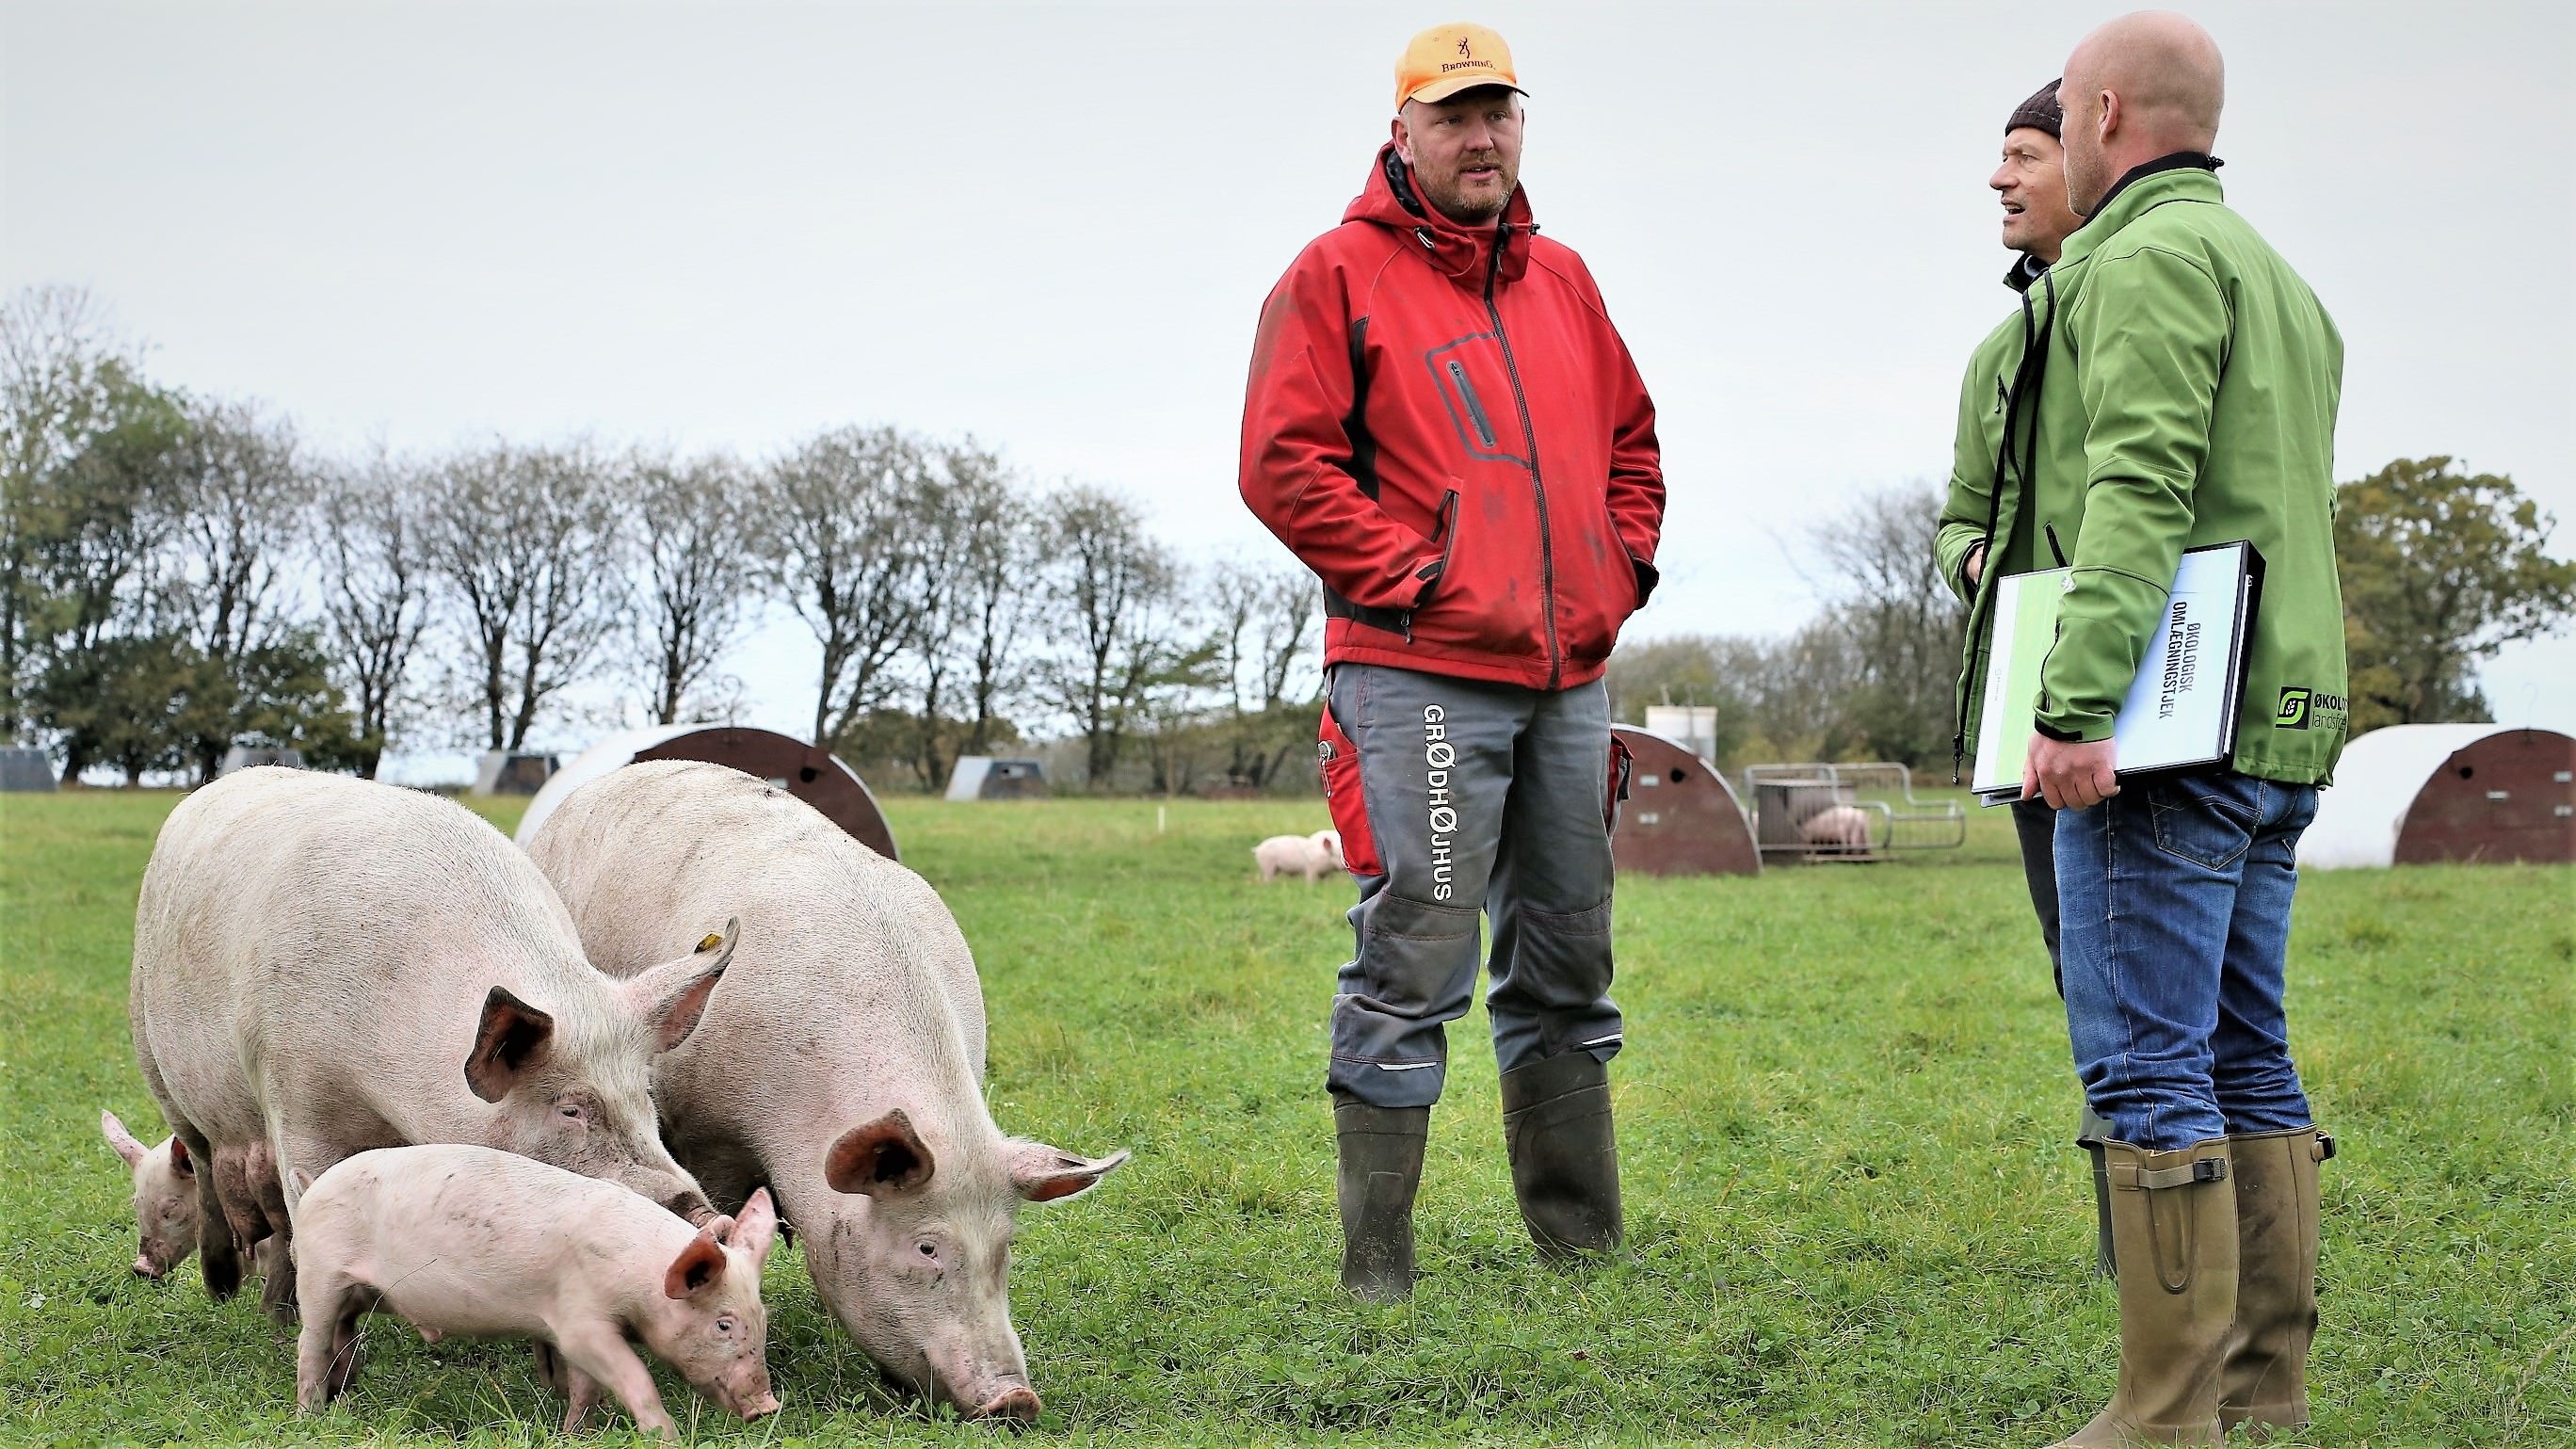 Omlægningskonsulenter snakker med en svineproducent på en mark - omkring dem går grise